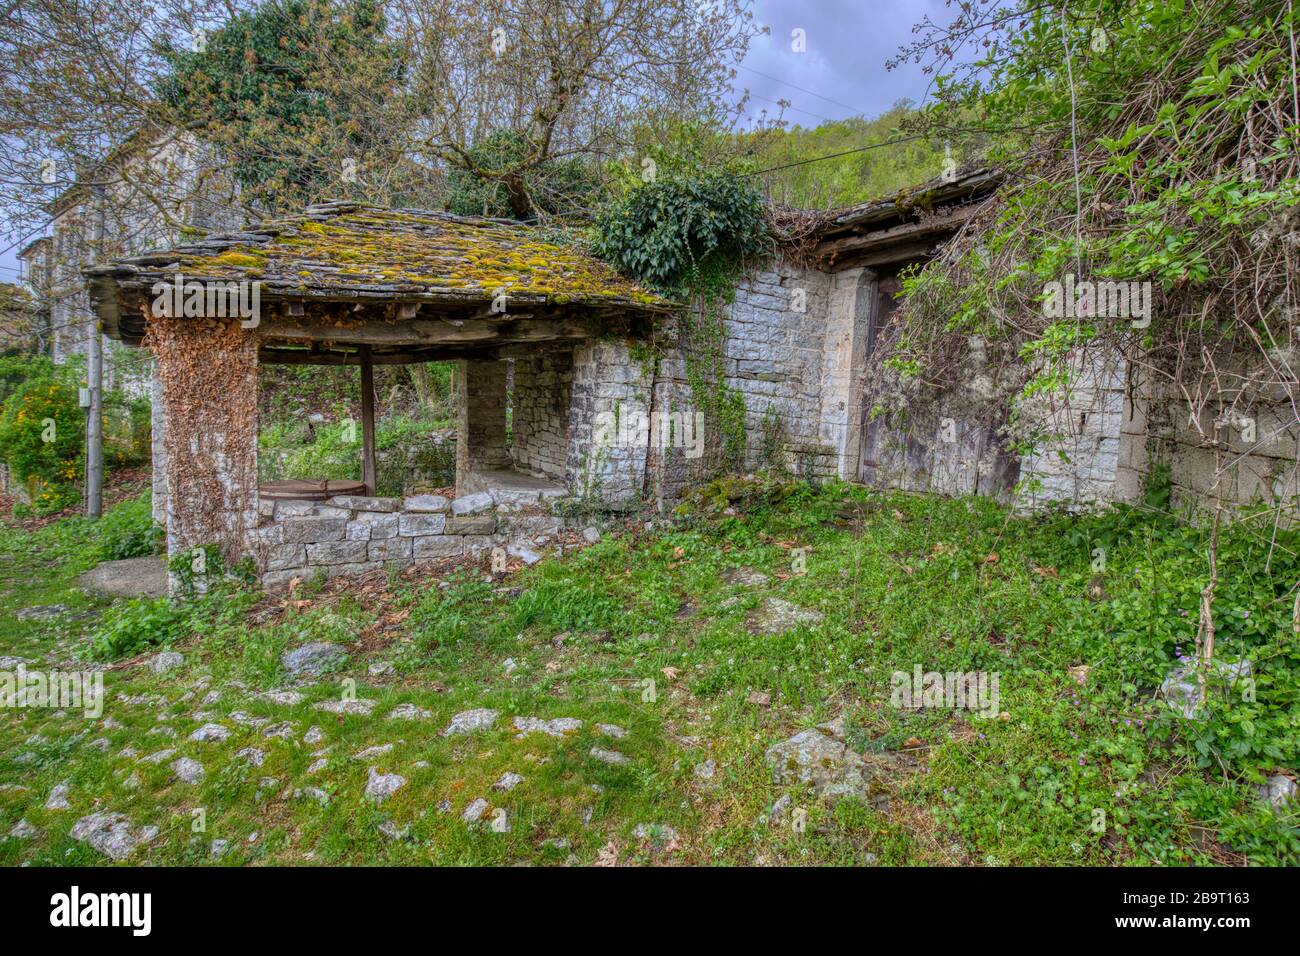 Uno scenario incredibile dal pittoresco villaggio di Dilofo con i suoi tradizionali edifici architettonici antichi situati sul monte Tymfi, Zagori, Epiro, nord Foto Stock